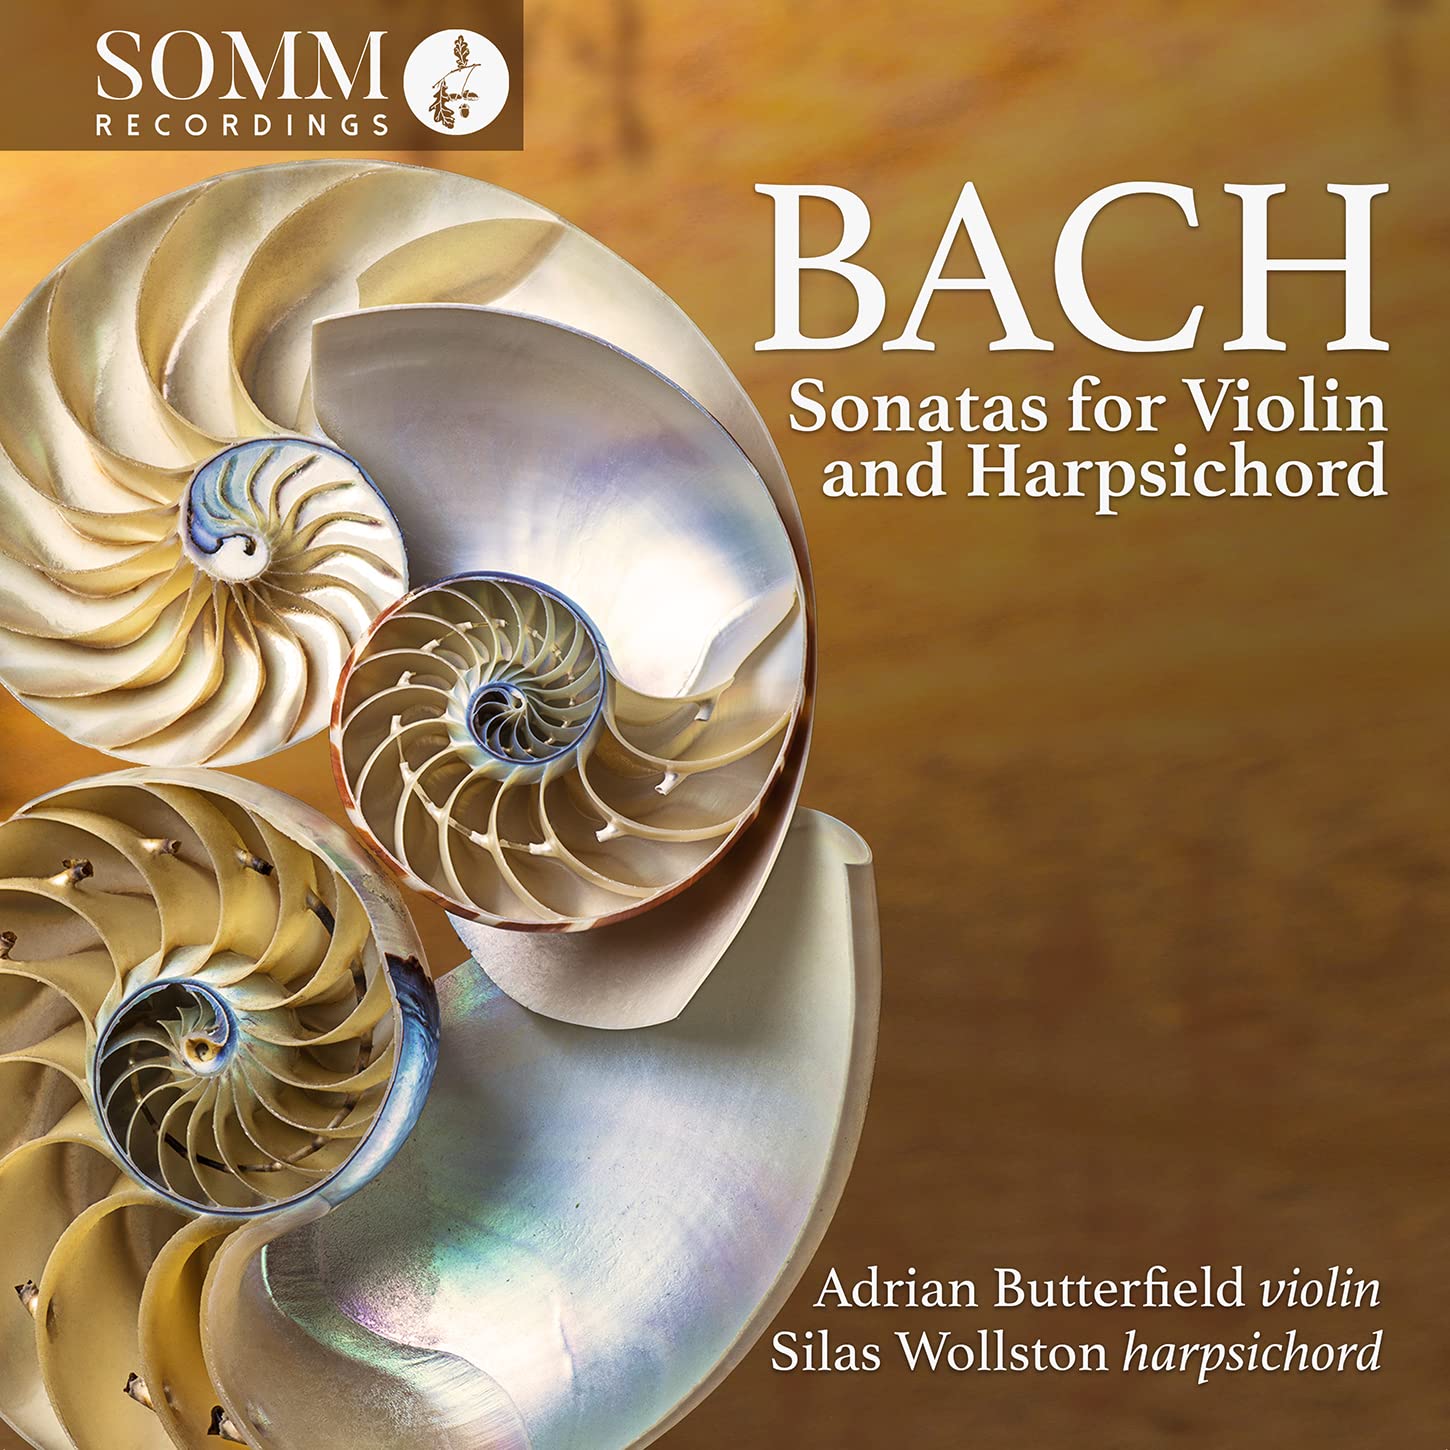 Audio Cd Johann Sebastian Bach - Sonatas For Violin And Harpsichord (2 Cd) NUOVO SIGILLATO, EDIZIONE DEL 17/03/2023 SUBITO DISPONIBILE